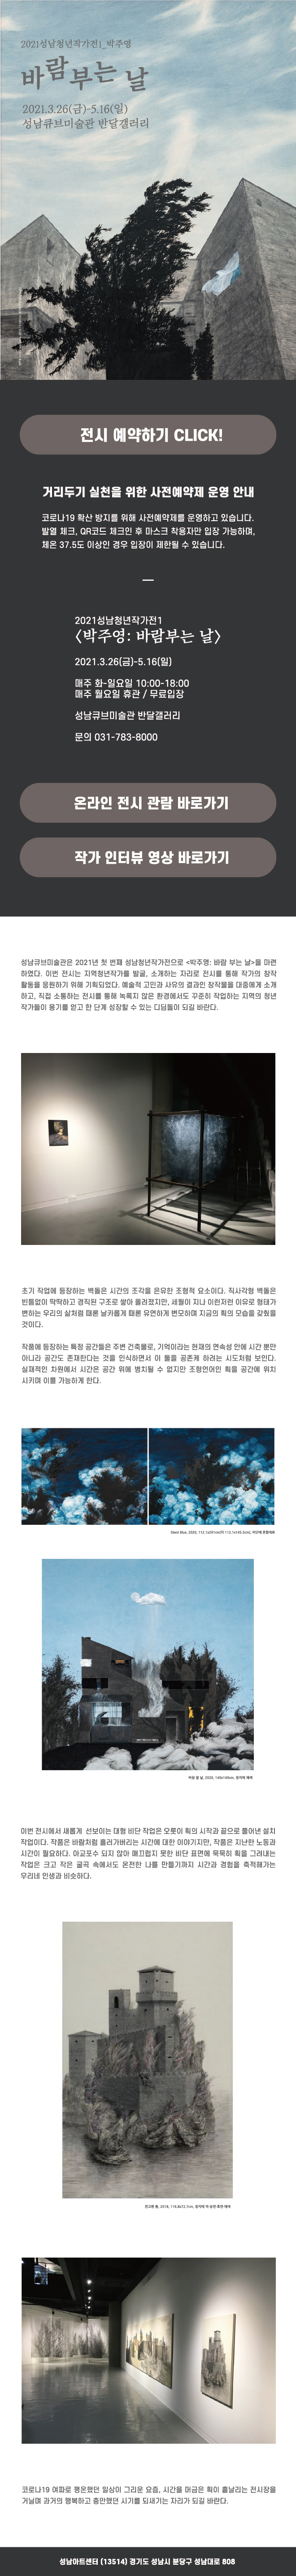 2021성남청년작가전1_박주영 바람 부는 날 2021.3.26(금)-5.16(일) 성남큐브미술관 반달갤러리